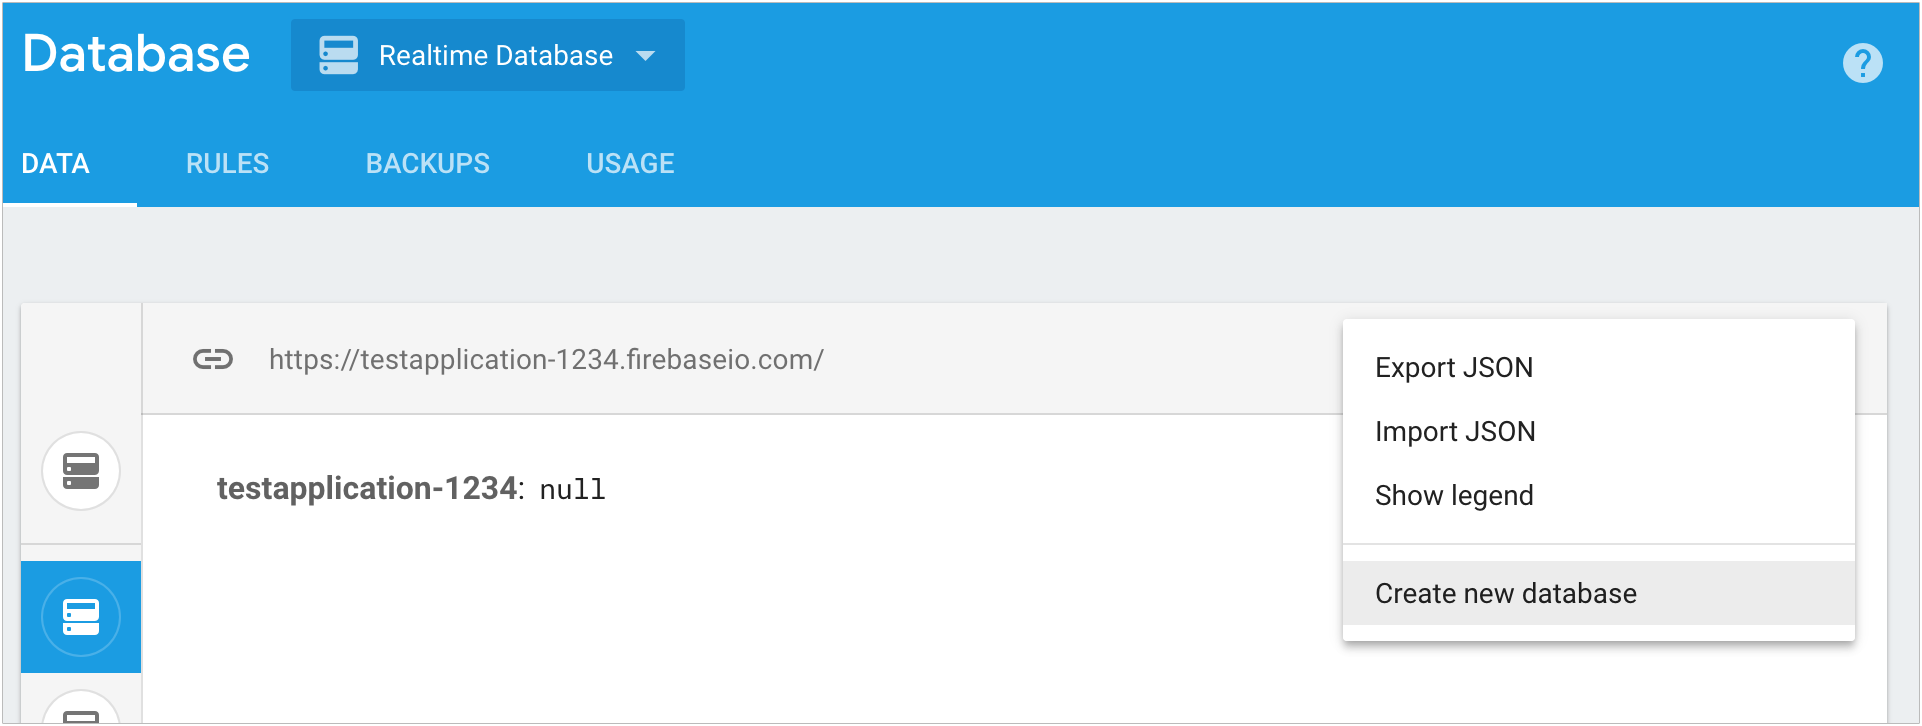 membuat database di Firebase console dengan menu konteks di bagian database